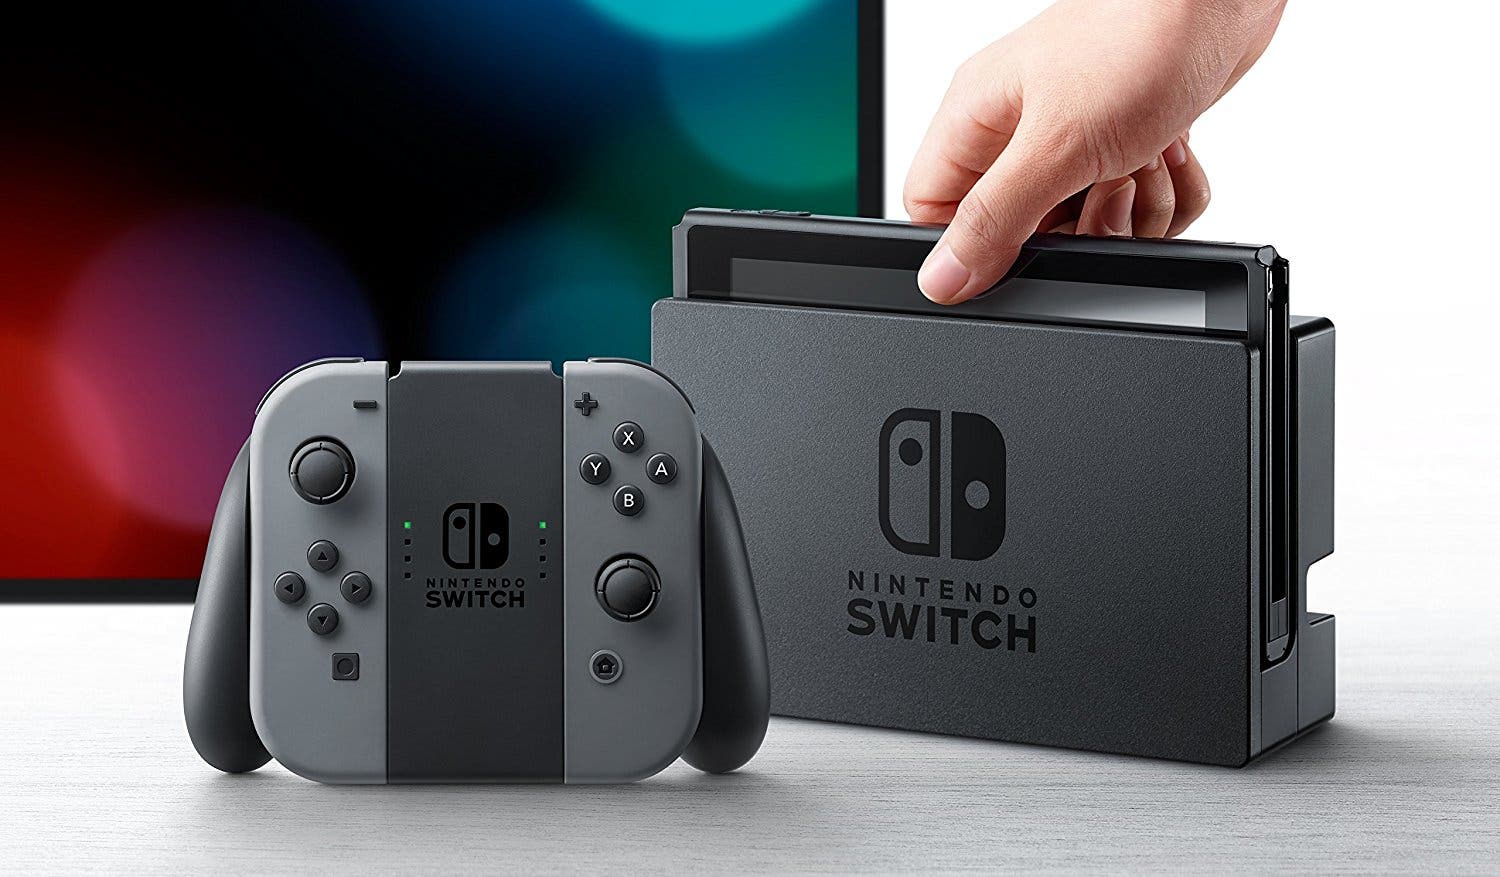 Nintendo Switch ha sido uno de los 5 productos más vendidos desde Acción de Gracias hasta el Cyber Monday